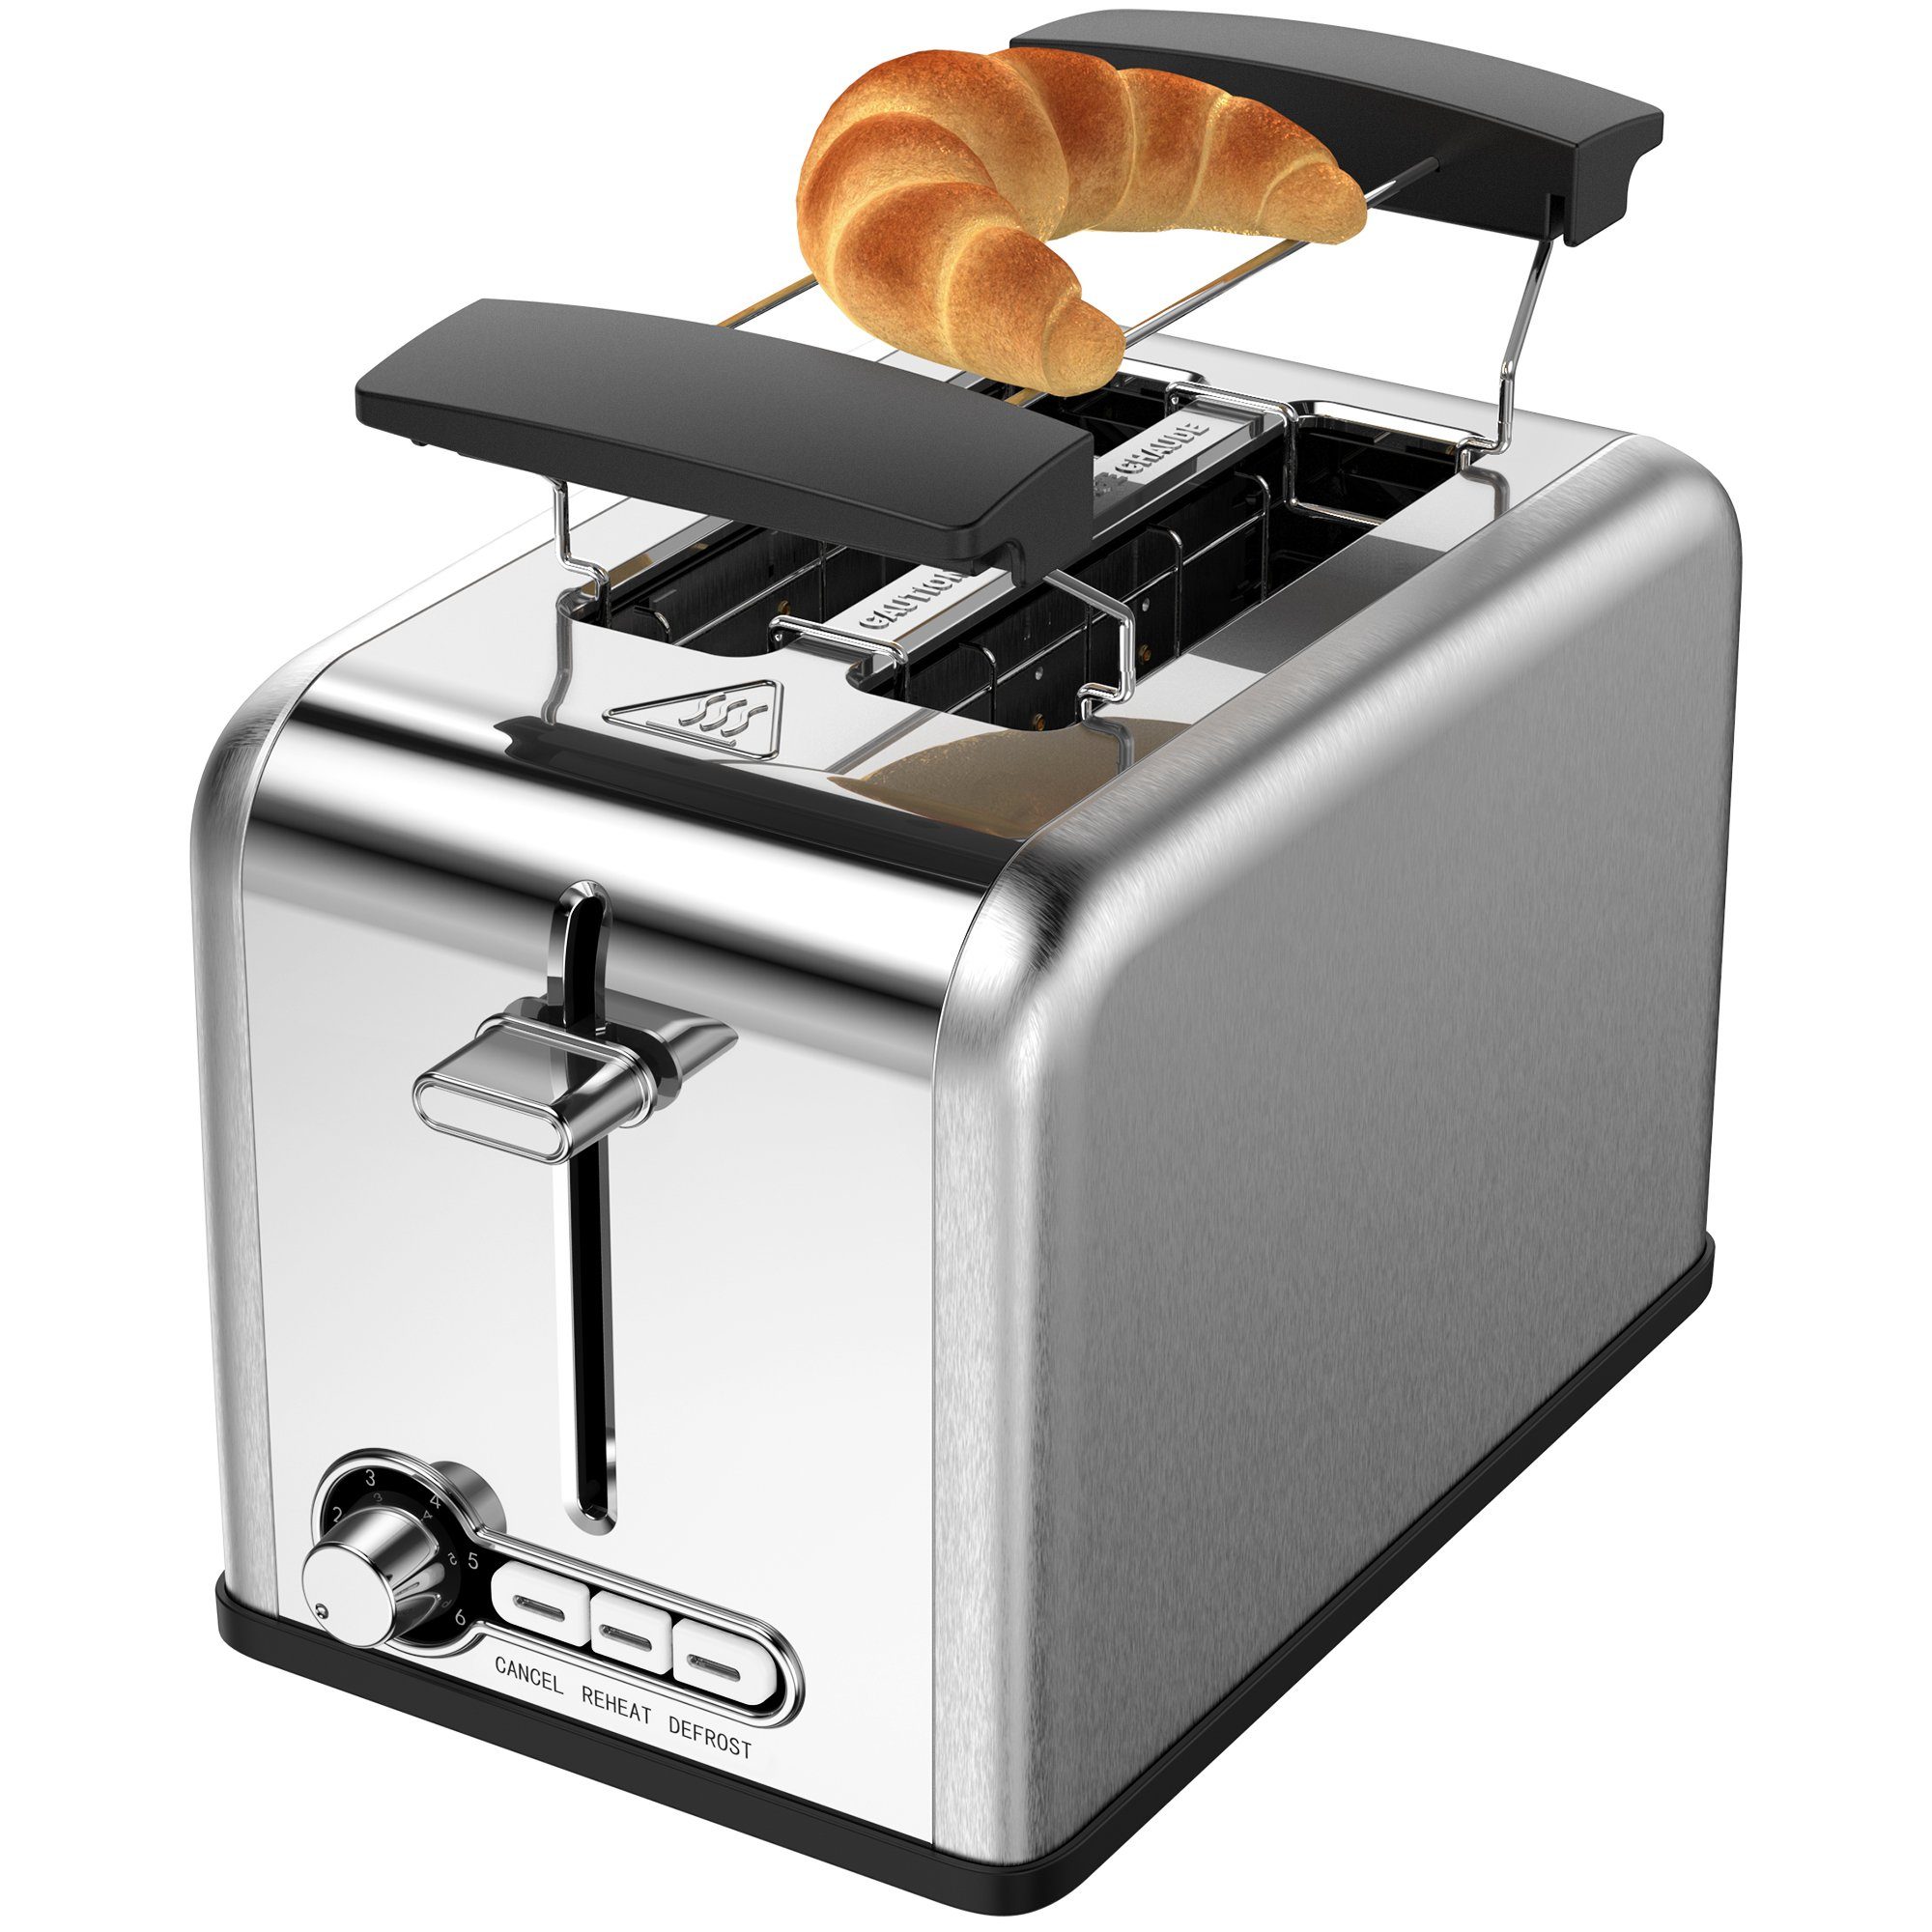 Mutoy Toaster Toaster, 2 kurze W Schlitze, 2 Scheiben, Brötchenaufsatz, für 825,00 mit W, 825 kurze Schlitze, 2